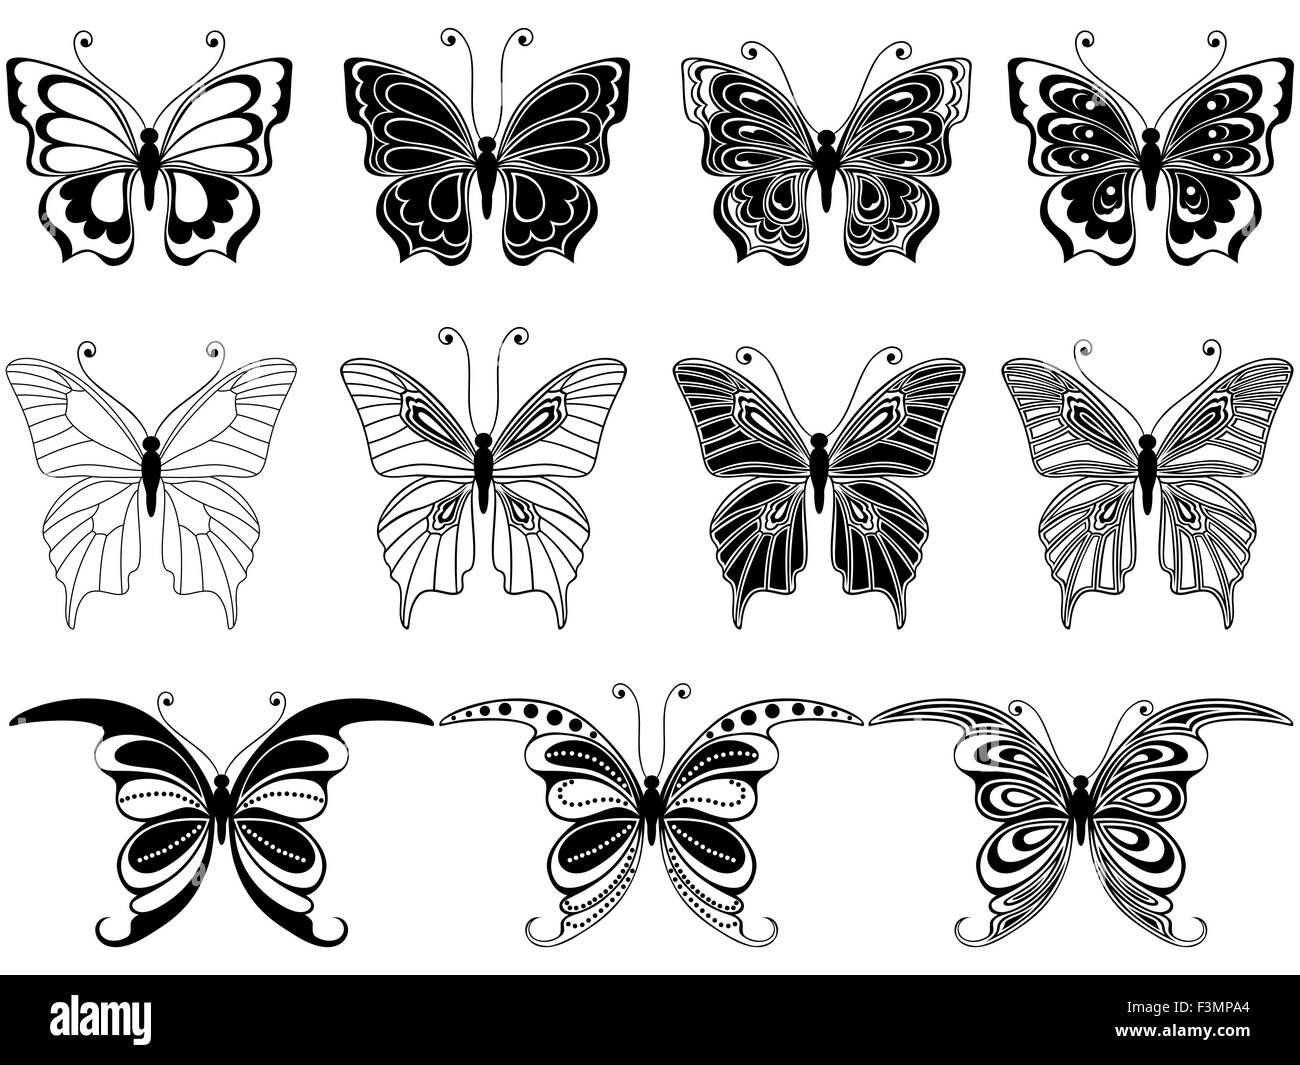 Satz von elf ornamentalen Schablonen Schmetterlinge isoliert auf einem weißen Hintergrund, Handzeichnung Vektor-illustration Stock Vektor